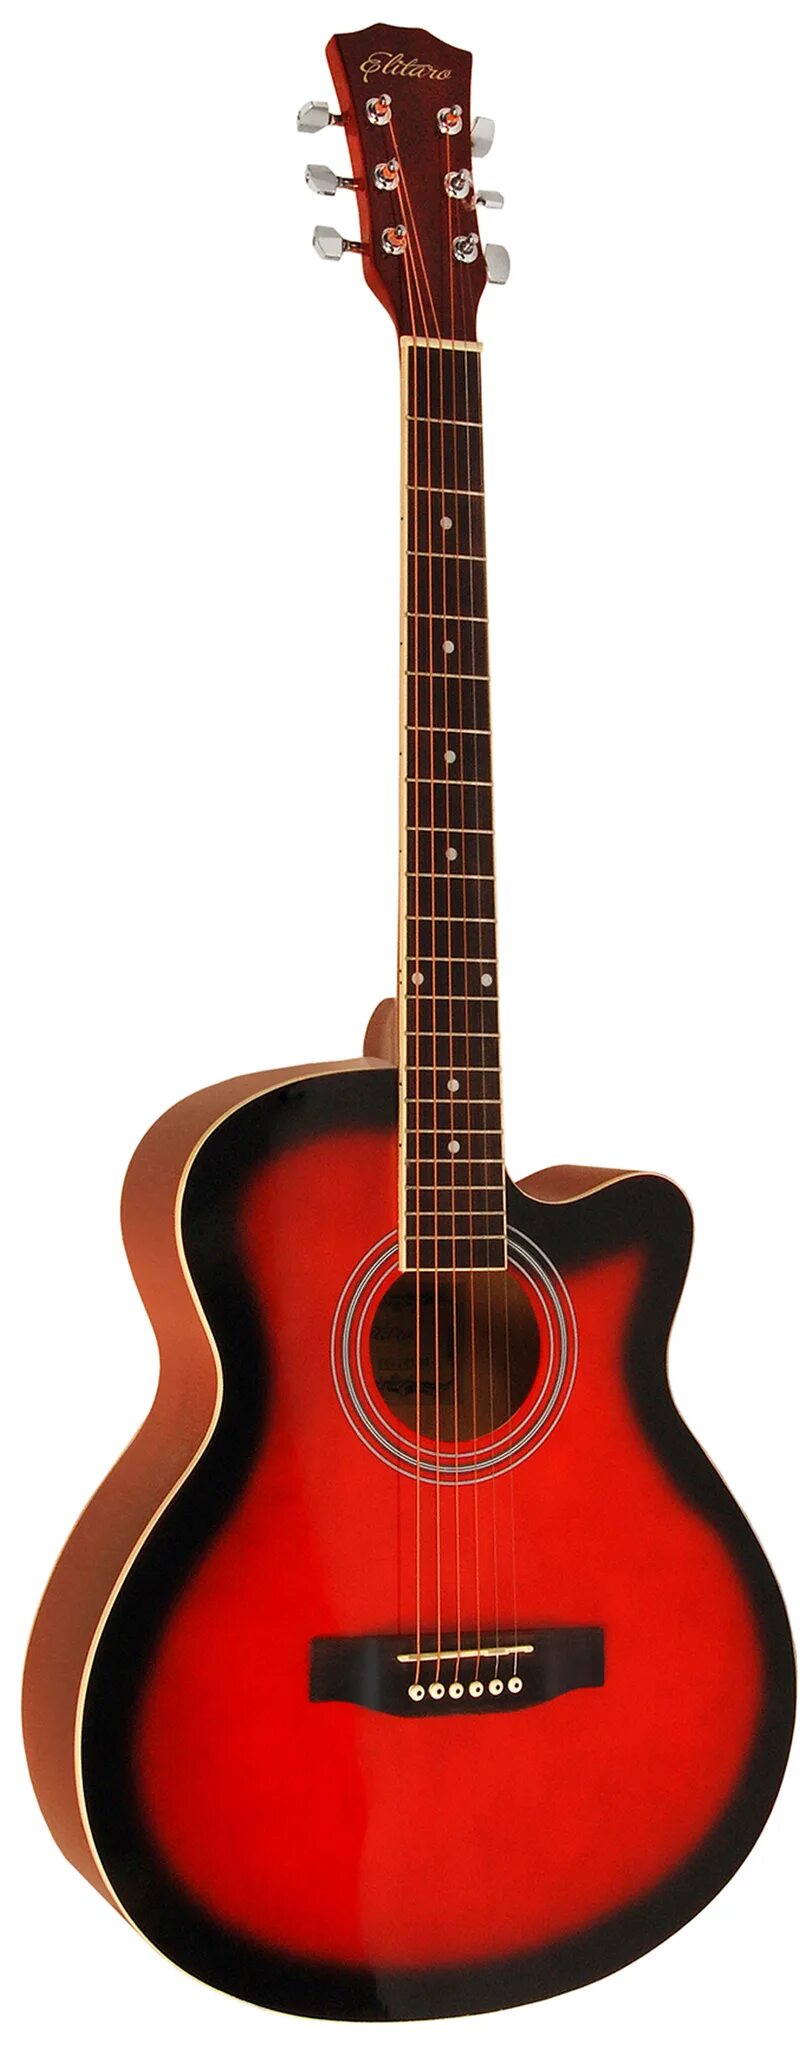 Купить гитару martinez. Yamaha fg800 Brown Sunburst. Naranda гитара cag110bs. Электроакустическая гитара Martinez FAW-702ceq. Электроакустическая гитара Fender fa-125ce Dreadnought Sunburst.